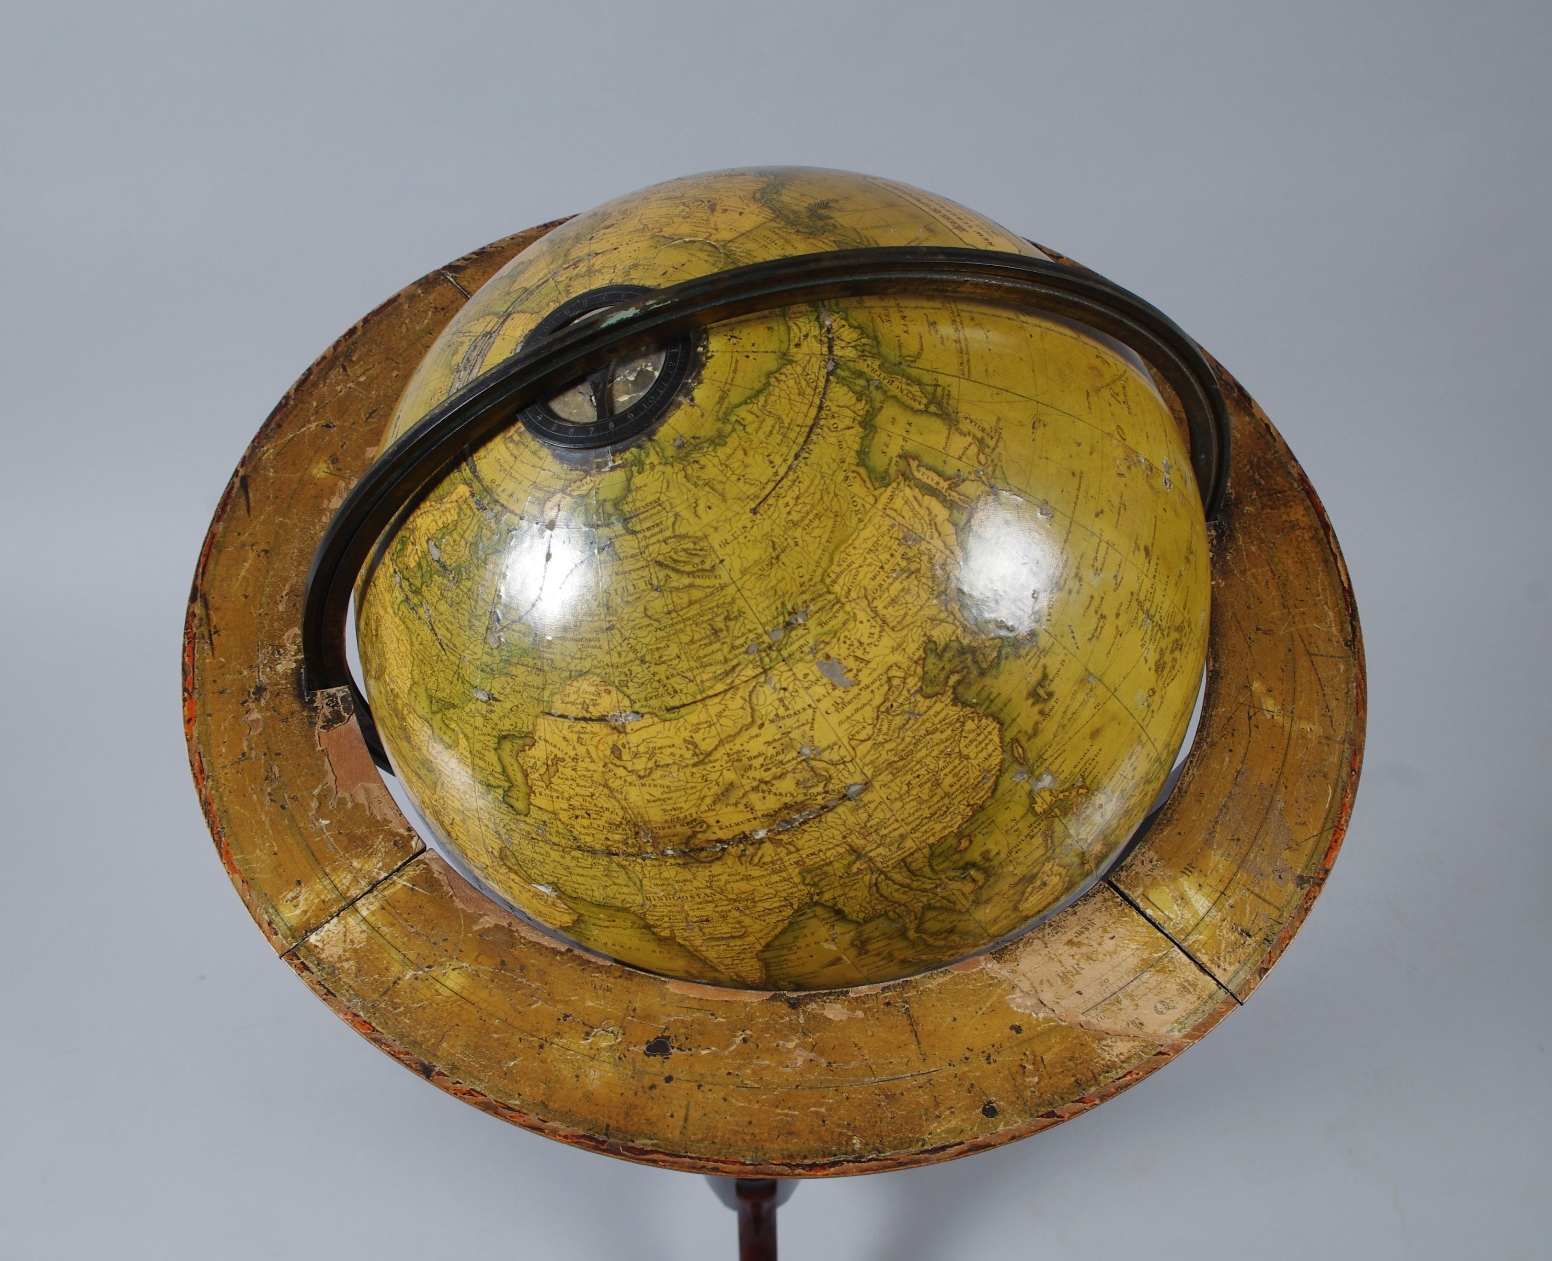 12" Terrestrial Globe by Kirkwood of Edinburgh